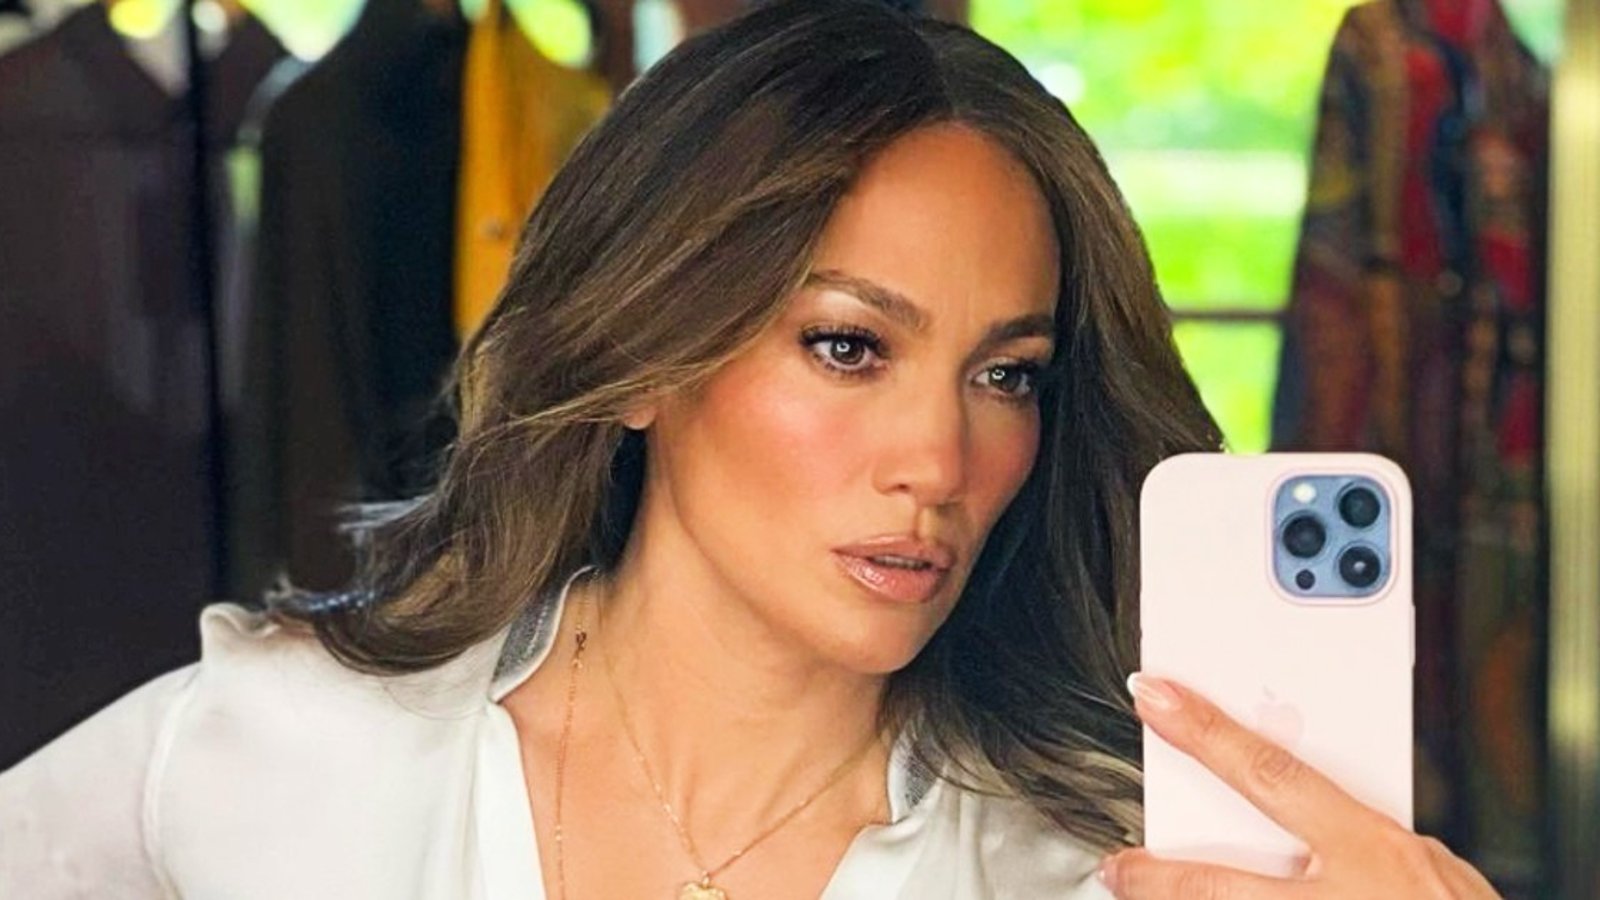 Jennifer Lopez publie une vidéo touchante qui fait beaucoup réagir les internautes